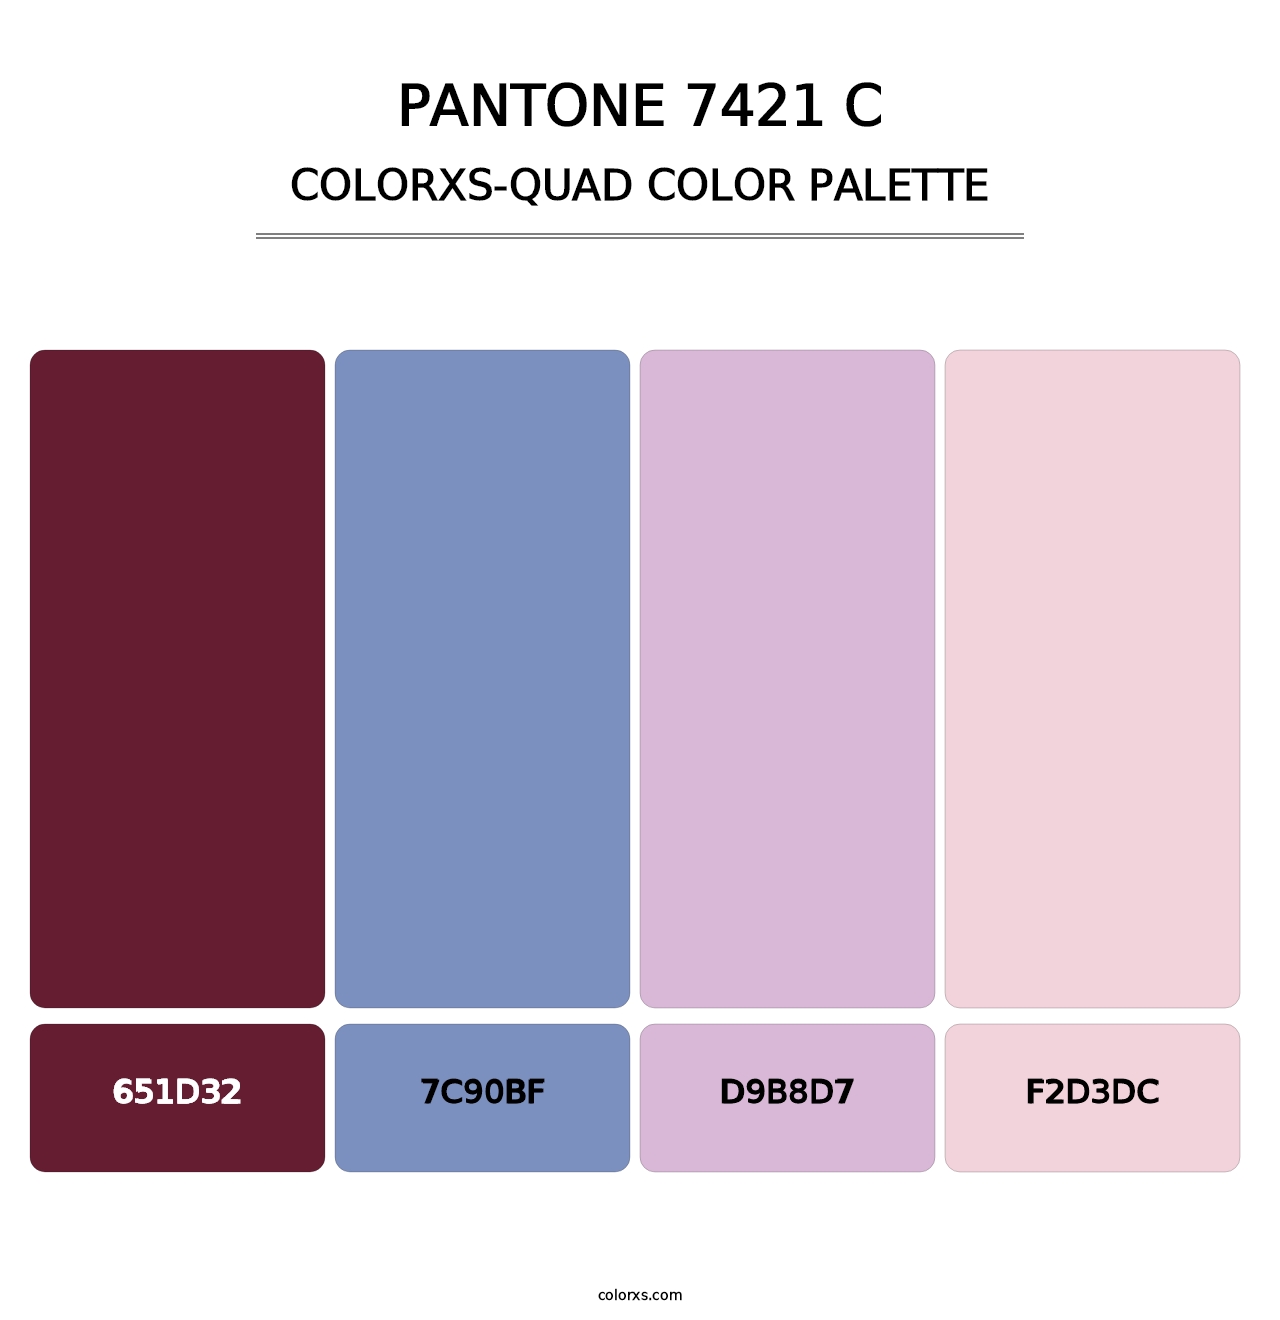 PANTONE 7421 C - Colorxs Quad Palette